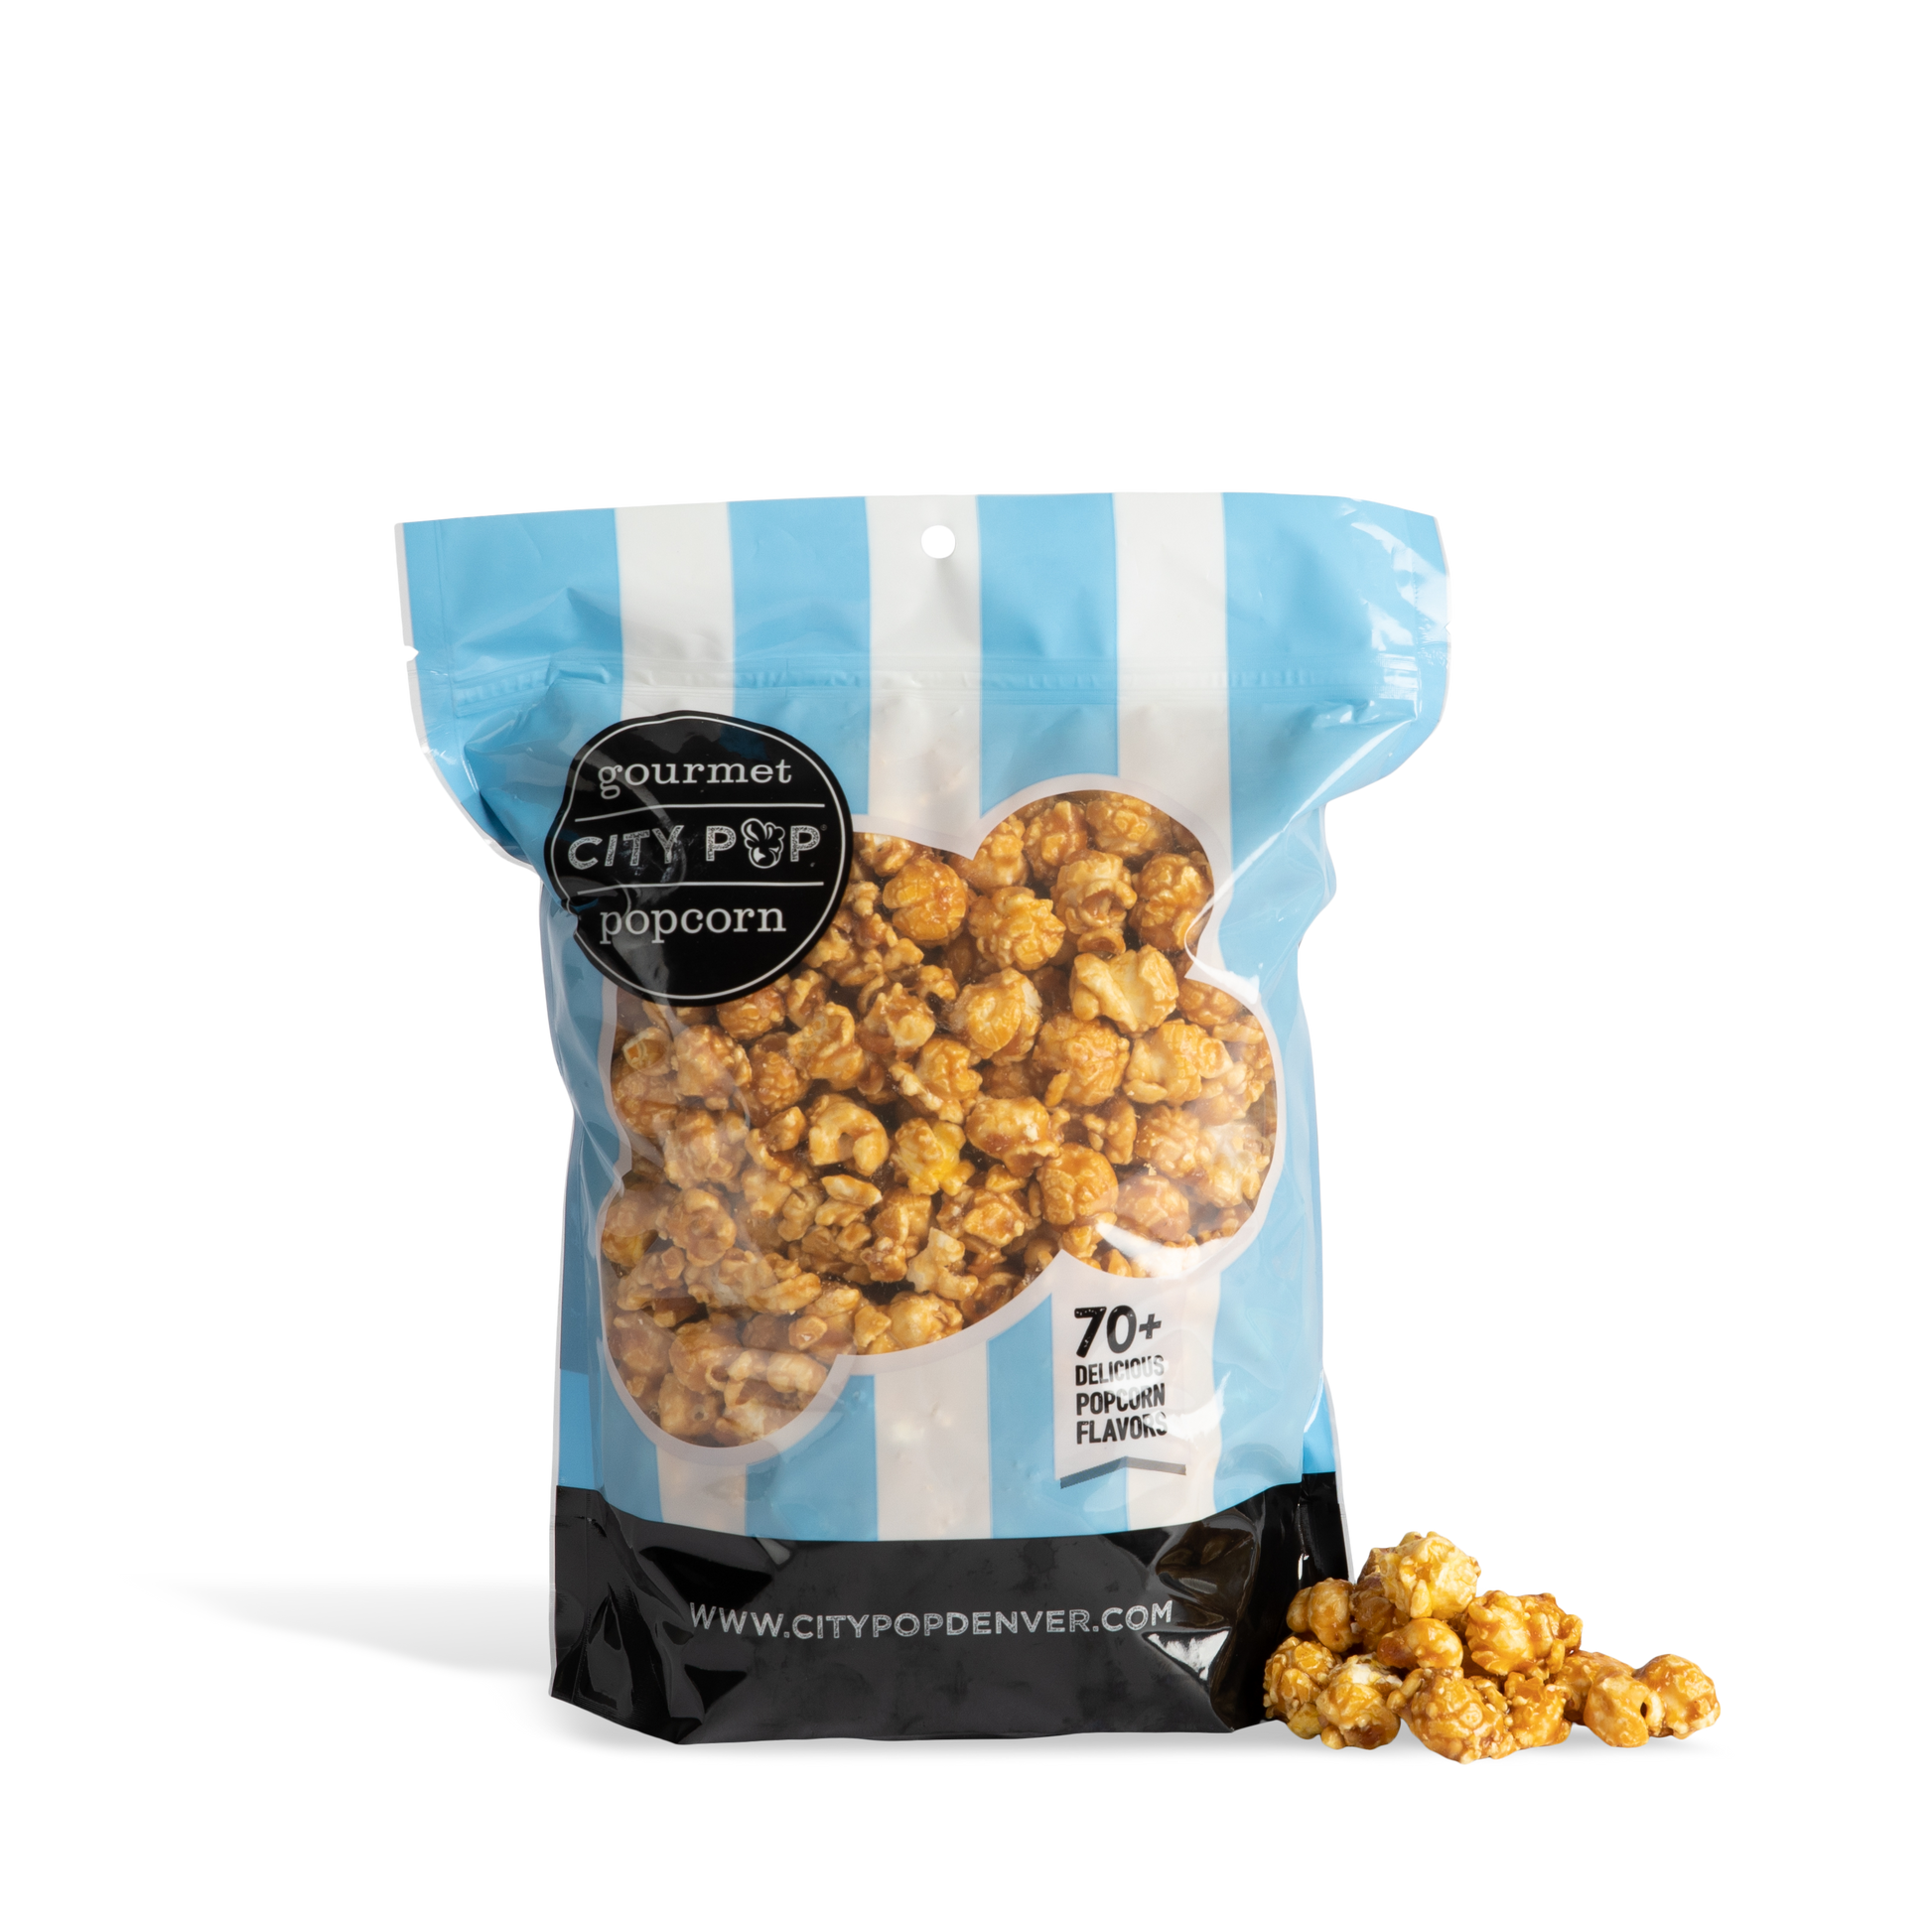 City Pop Caramel Popcorn Bag With Kernel